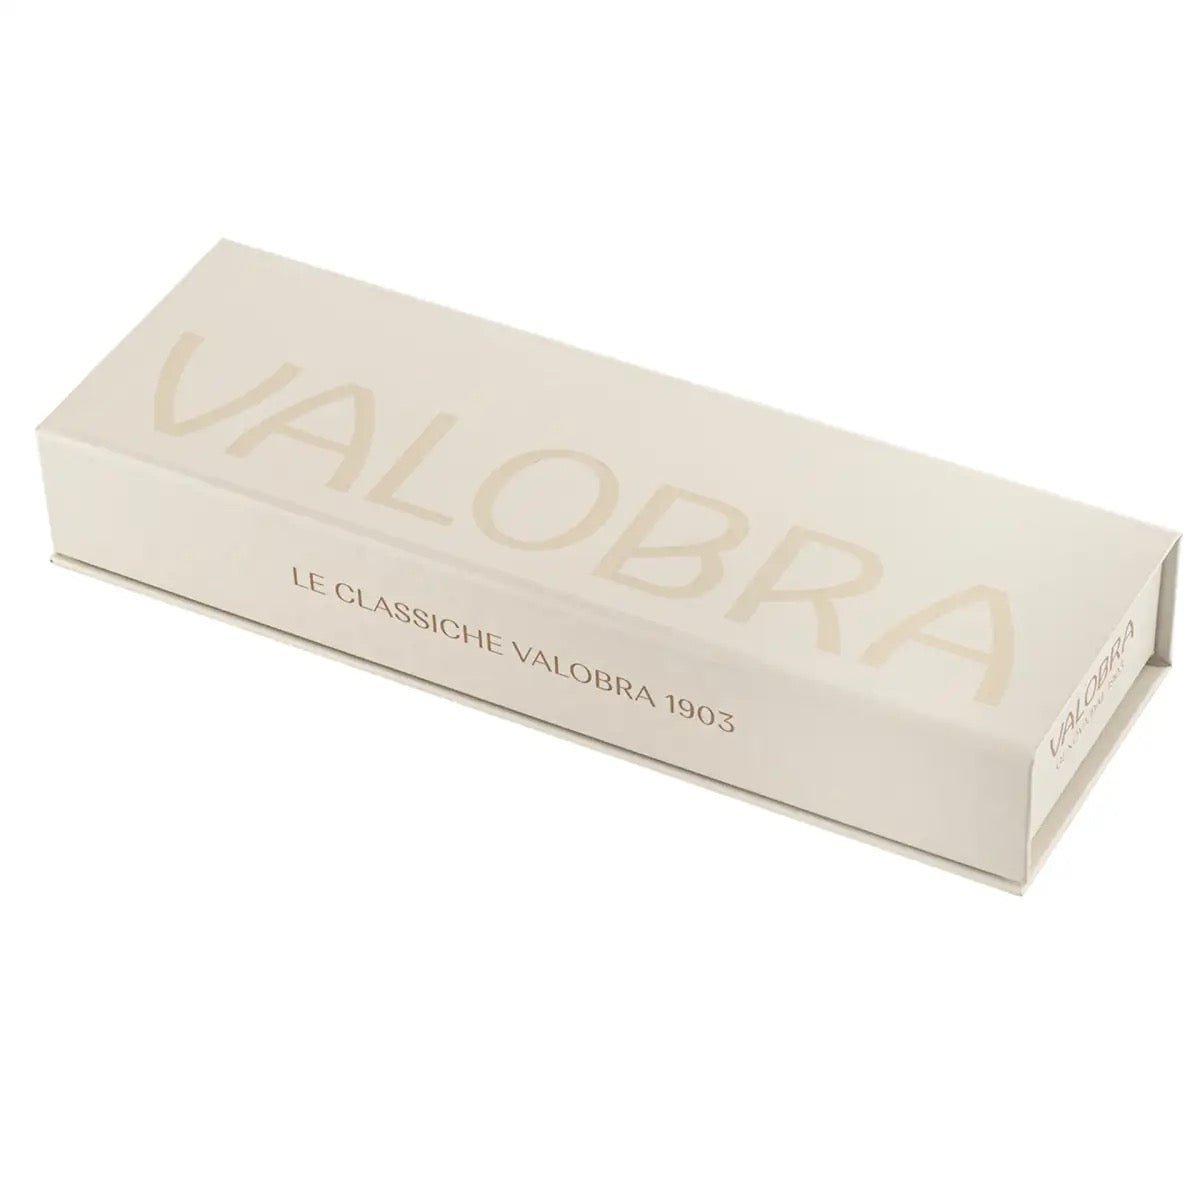 Valobra Pratolina Gift Box